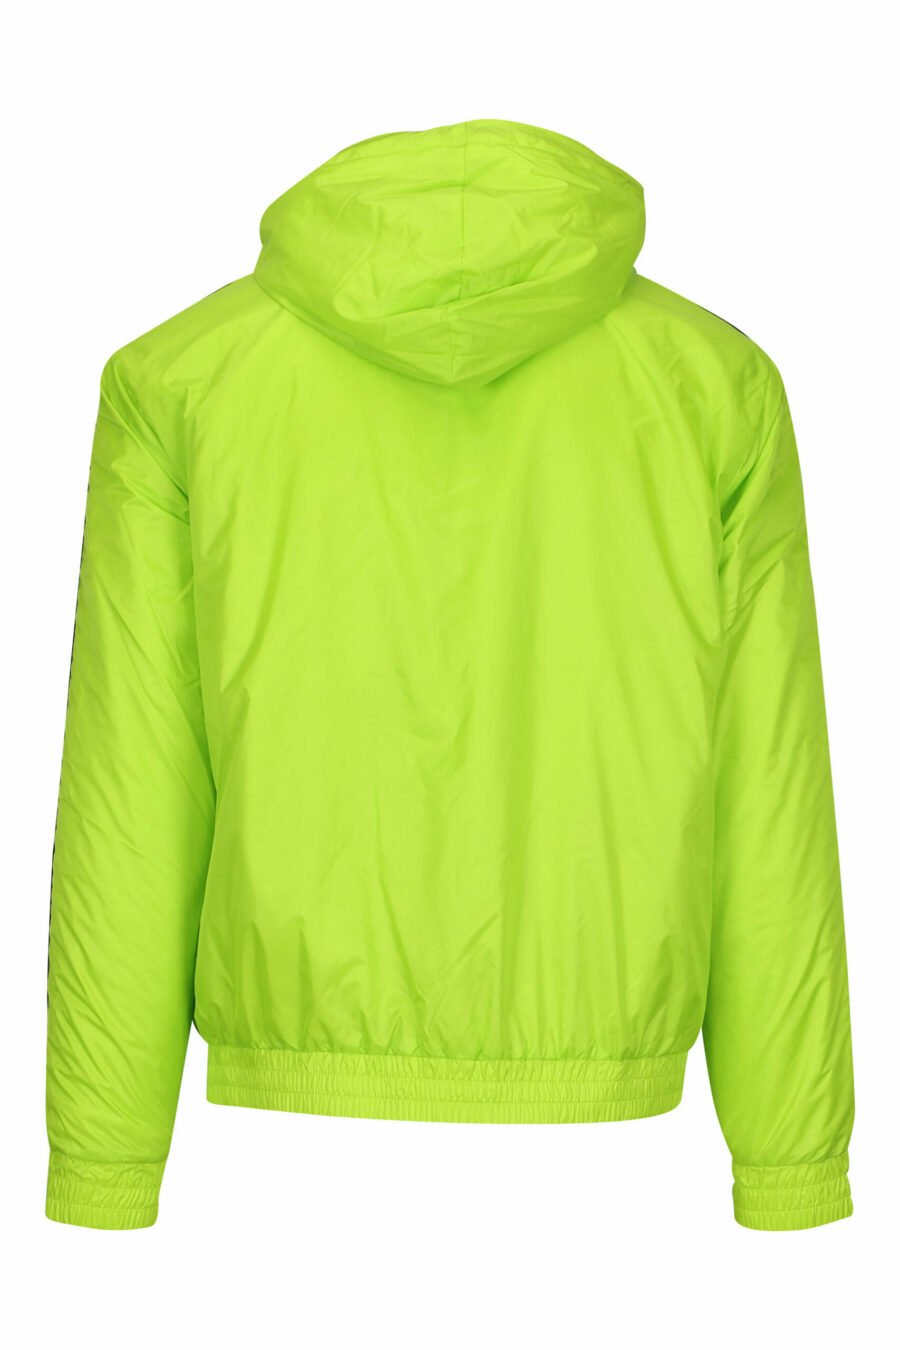 Veste imperméable vert citron avec capuche, lignes latérales blanches et logo "lux identity" - 8057970709060 1 à l'échelle